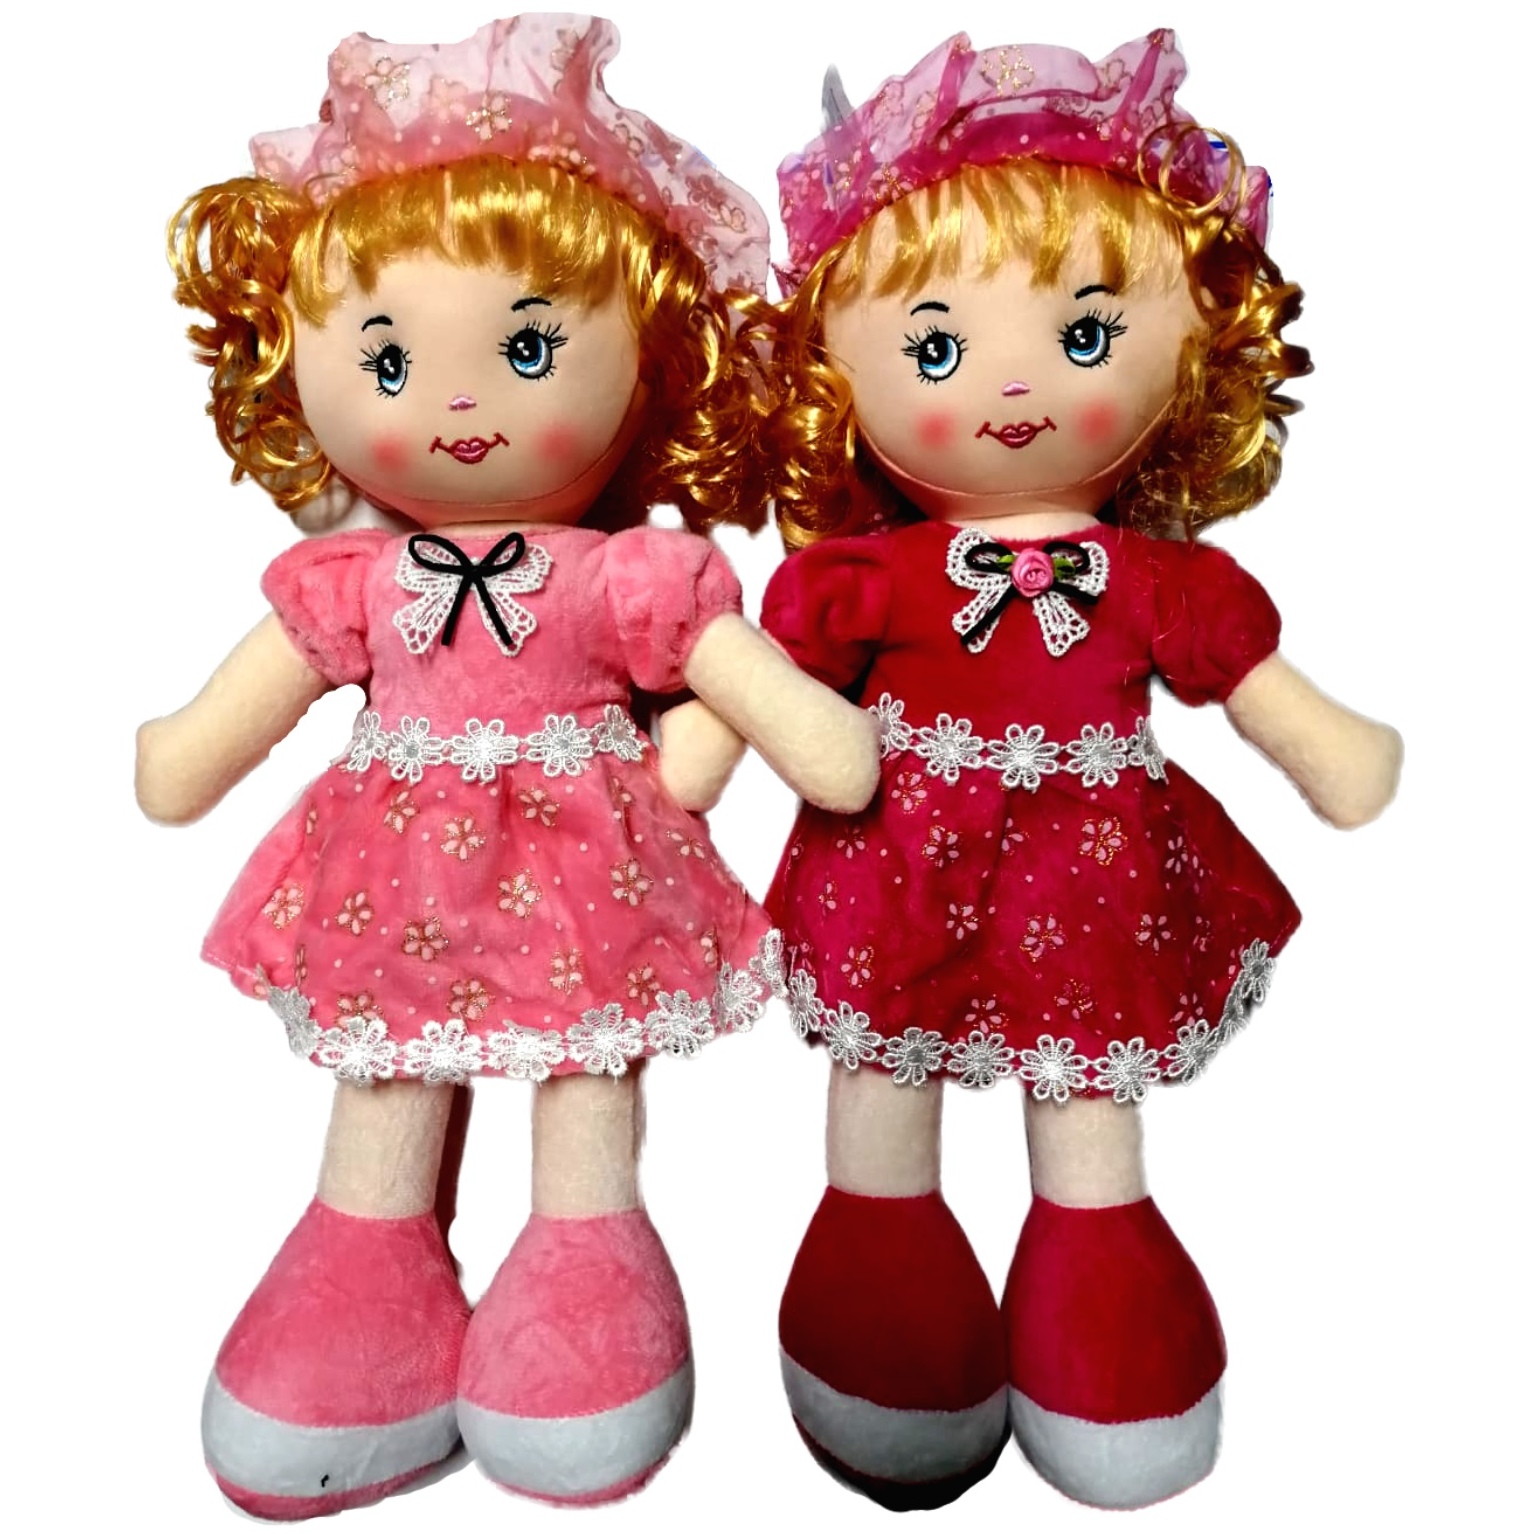 Мягкая игрушка "Кукла в платье" (9x32x8 см)